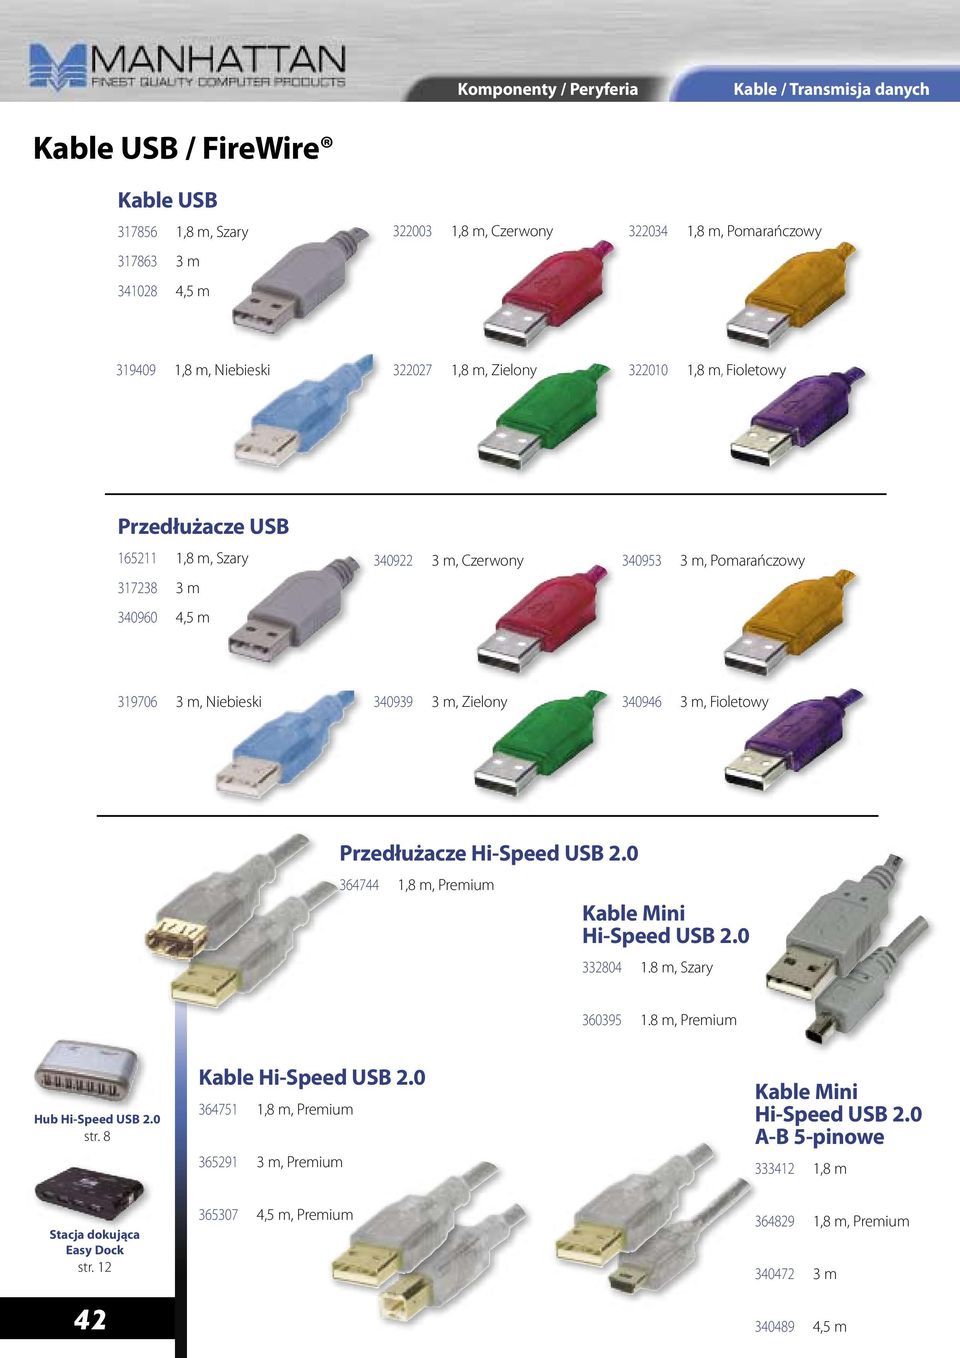 Zielony 340946 3 m, Fioletowy Przedłużacze Hi-Speed USB 2.0 364744 1,8 m, Premium Kable Mini Hi-Speed USB 2.0 332804 1.8 m, Szary 360395 1.8 m, Premium Hub Hi-Speed USB 2.0 str.